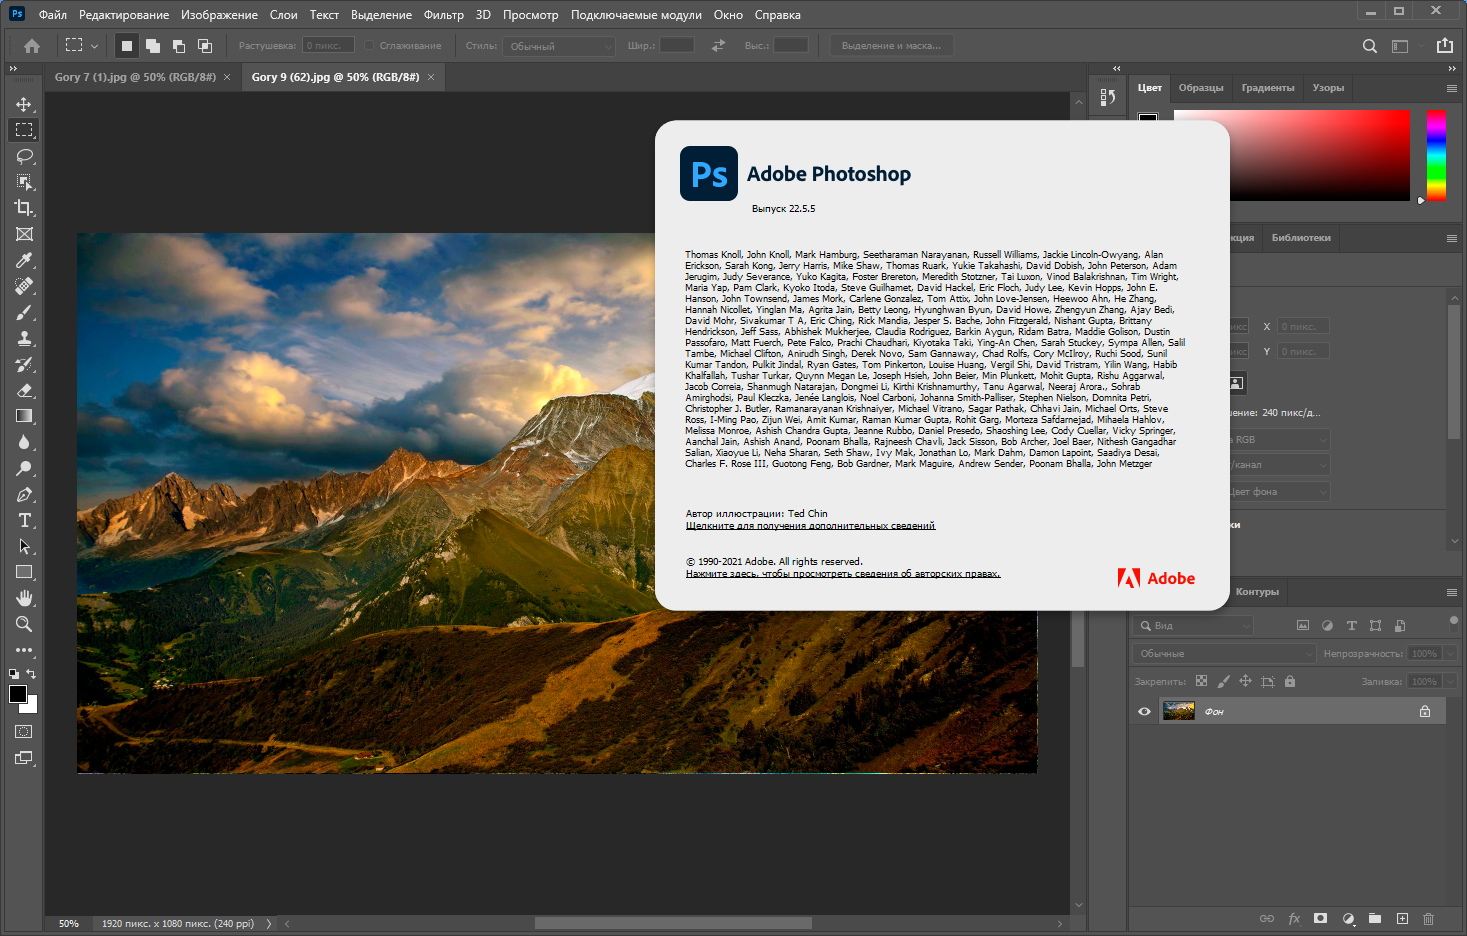 Adobe Photoshop 2021 22.5.5.691 RePack by KpoJIuK [Multi/Ru]